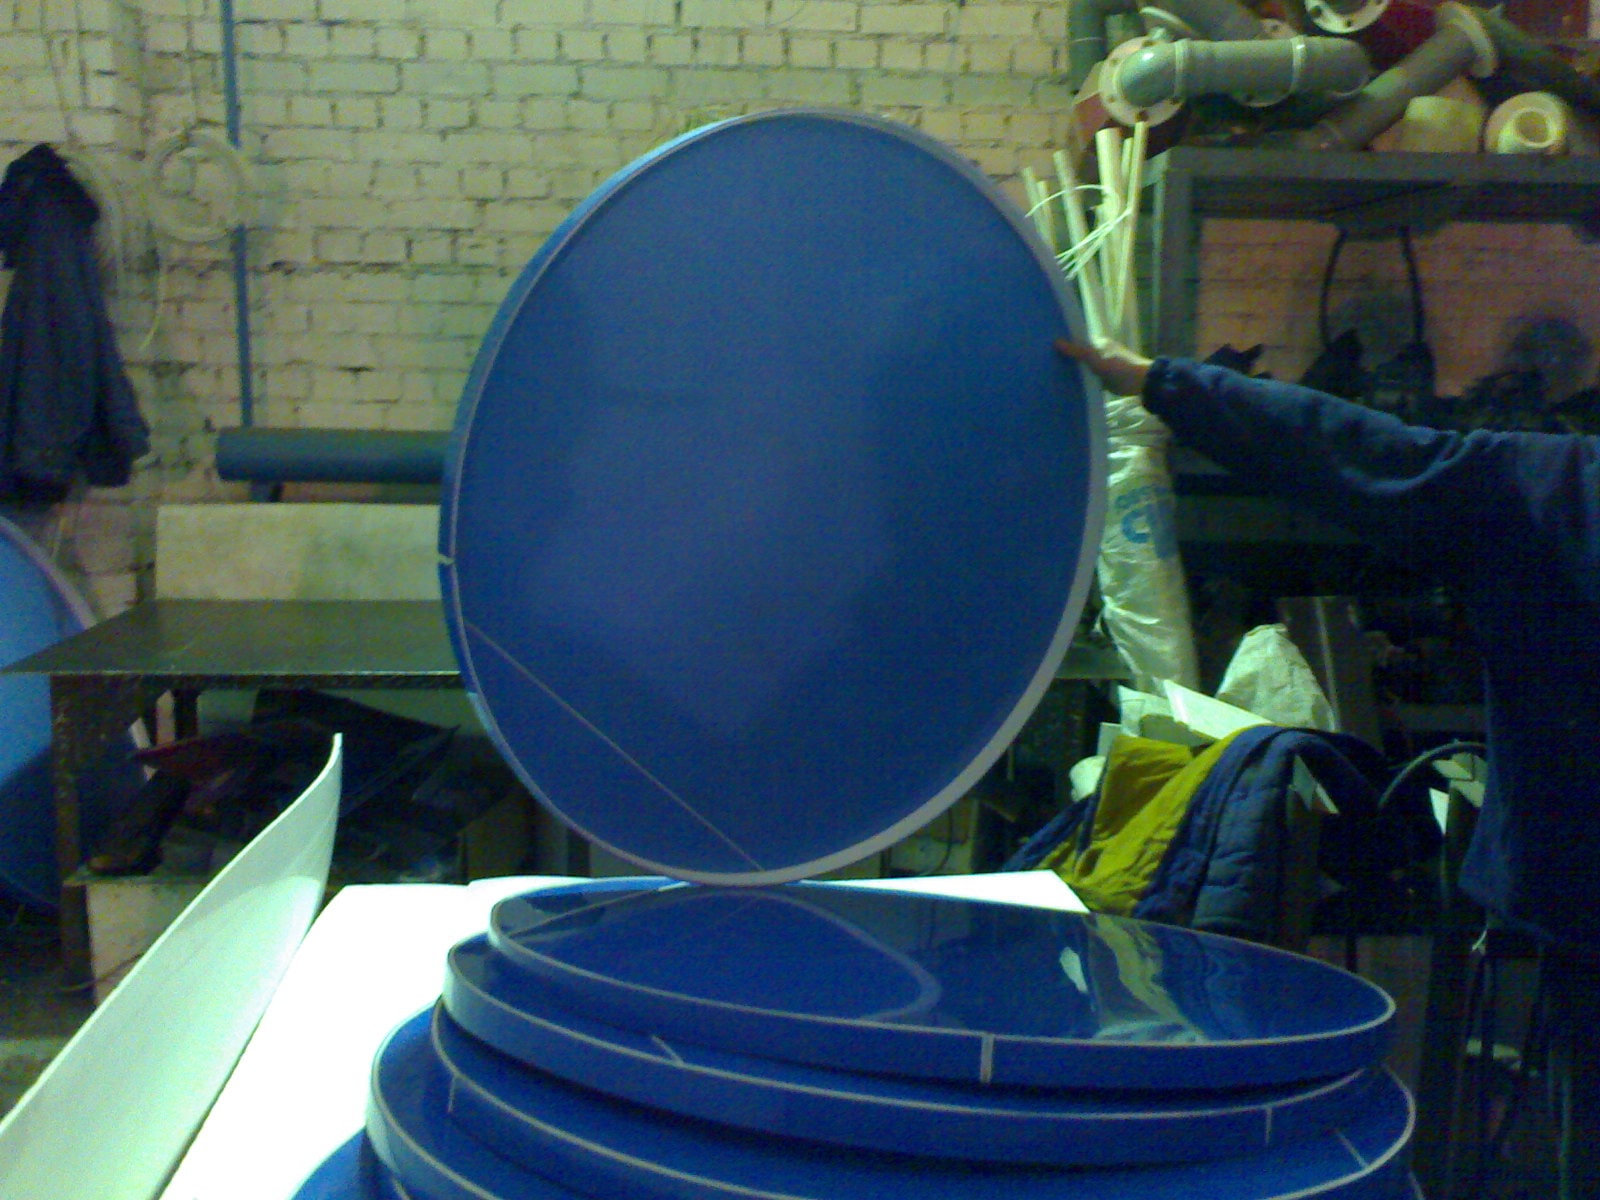 Стандартная крышка для хлебозавода пластиковая синяя на дежа для хлебозаводов. Стоимость данной крышки от 1 100 рублей.